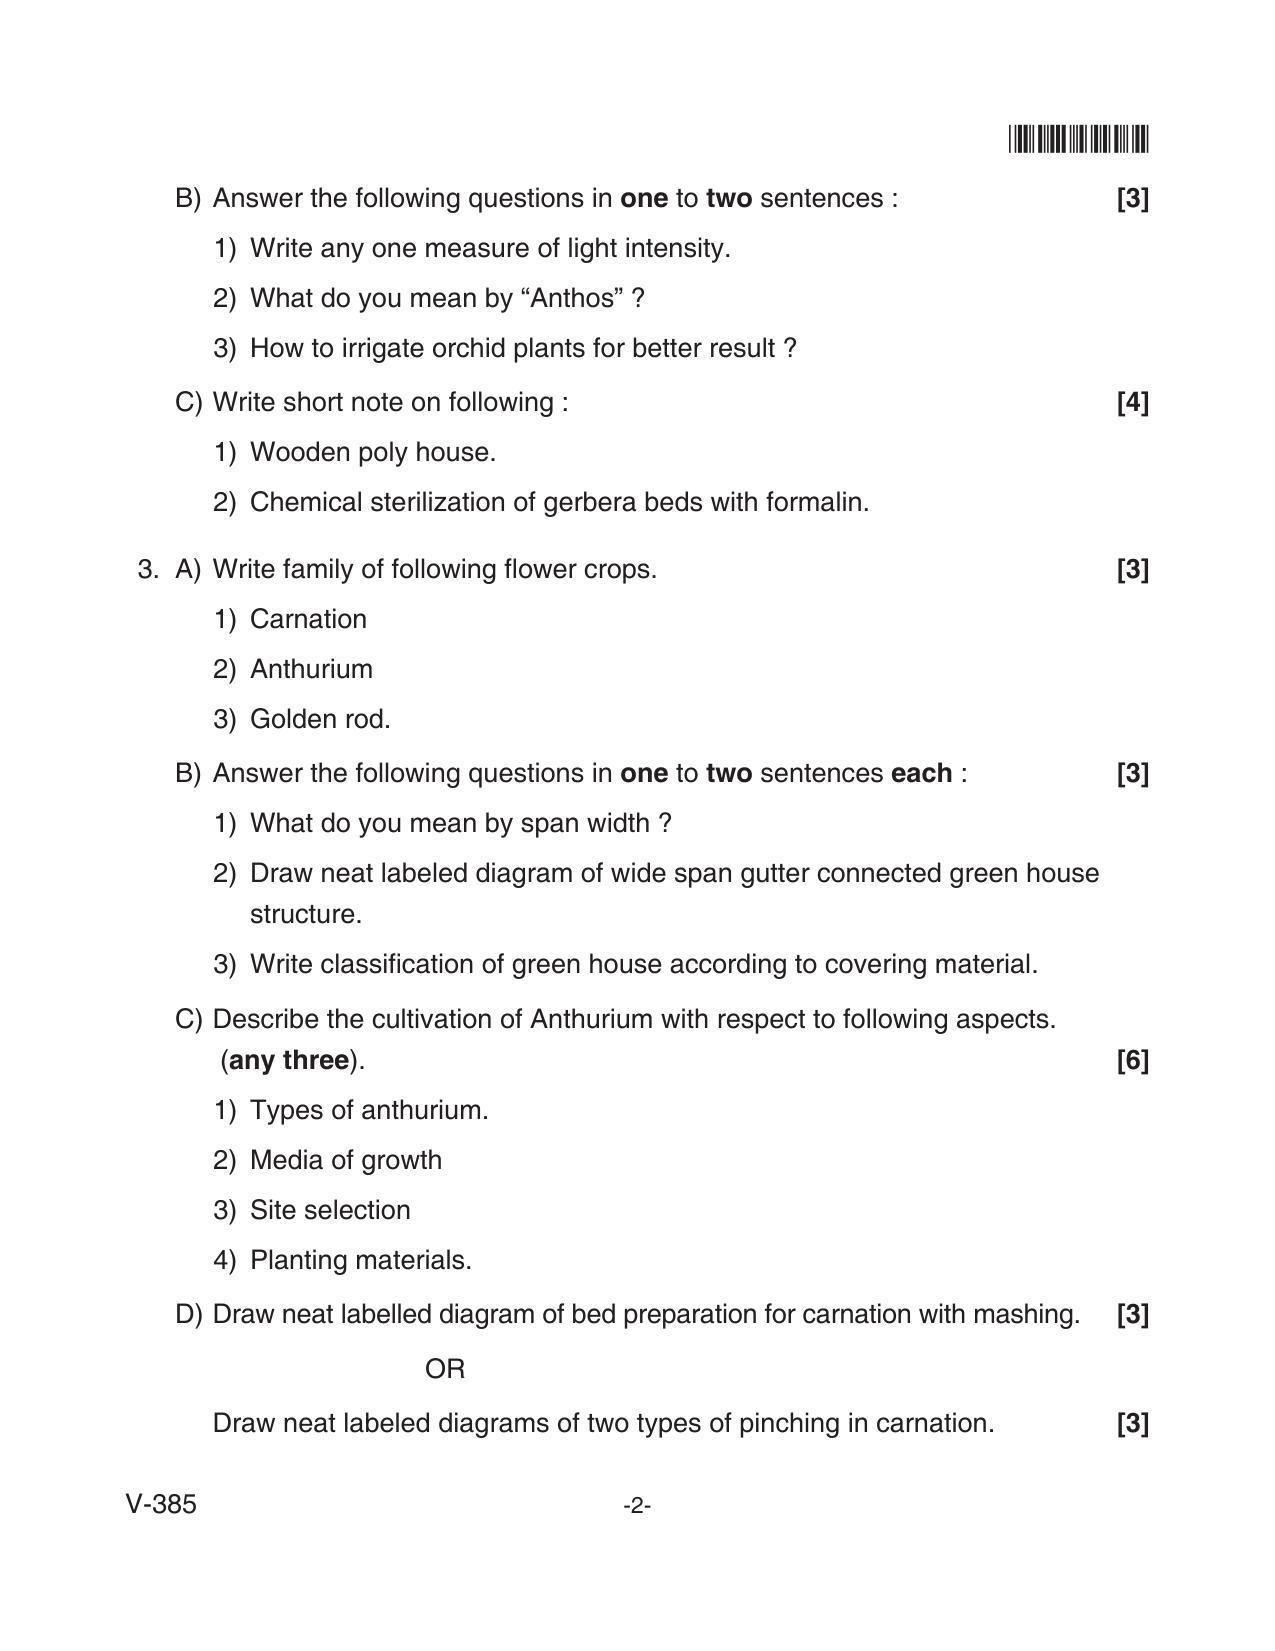 Goa Board Class 12 Floriculture  Voc 385 (June 2018) Question Paper - Page 2